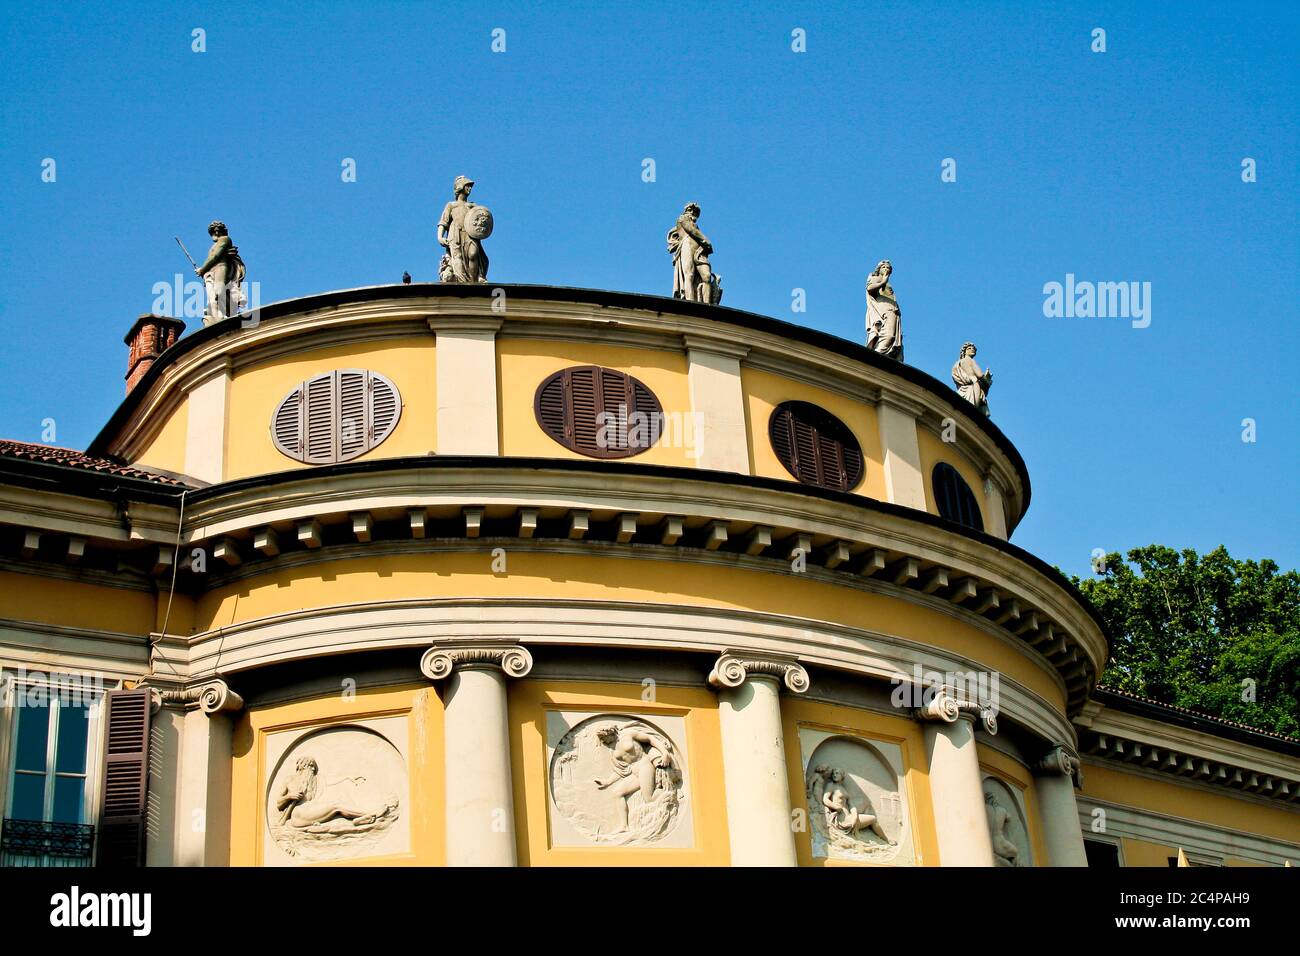 Como, Lombardy, Italy. The neoclassical Villa Saporiti (also known as Villa La Rotonda or Villa Resta Pallavicini), was built by the Austrian architect Leopold Pollack between 1791 and 1793. Stock Photo